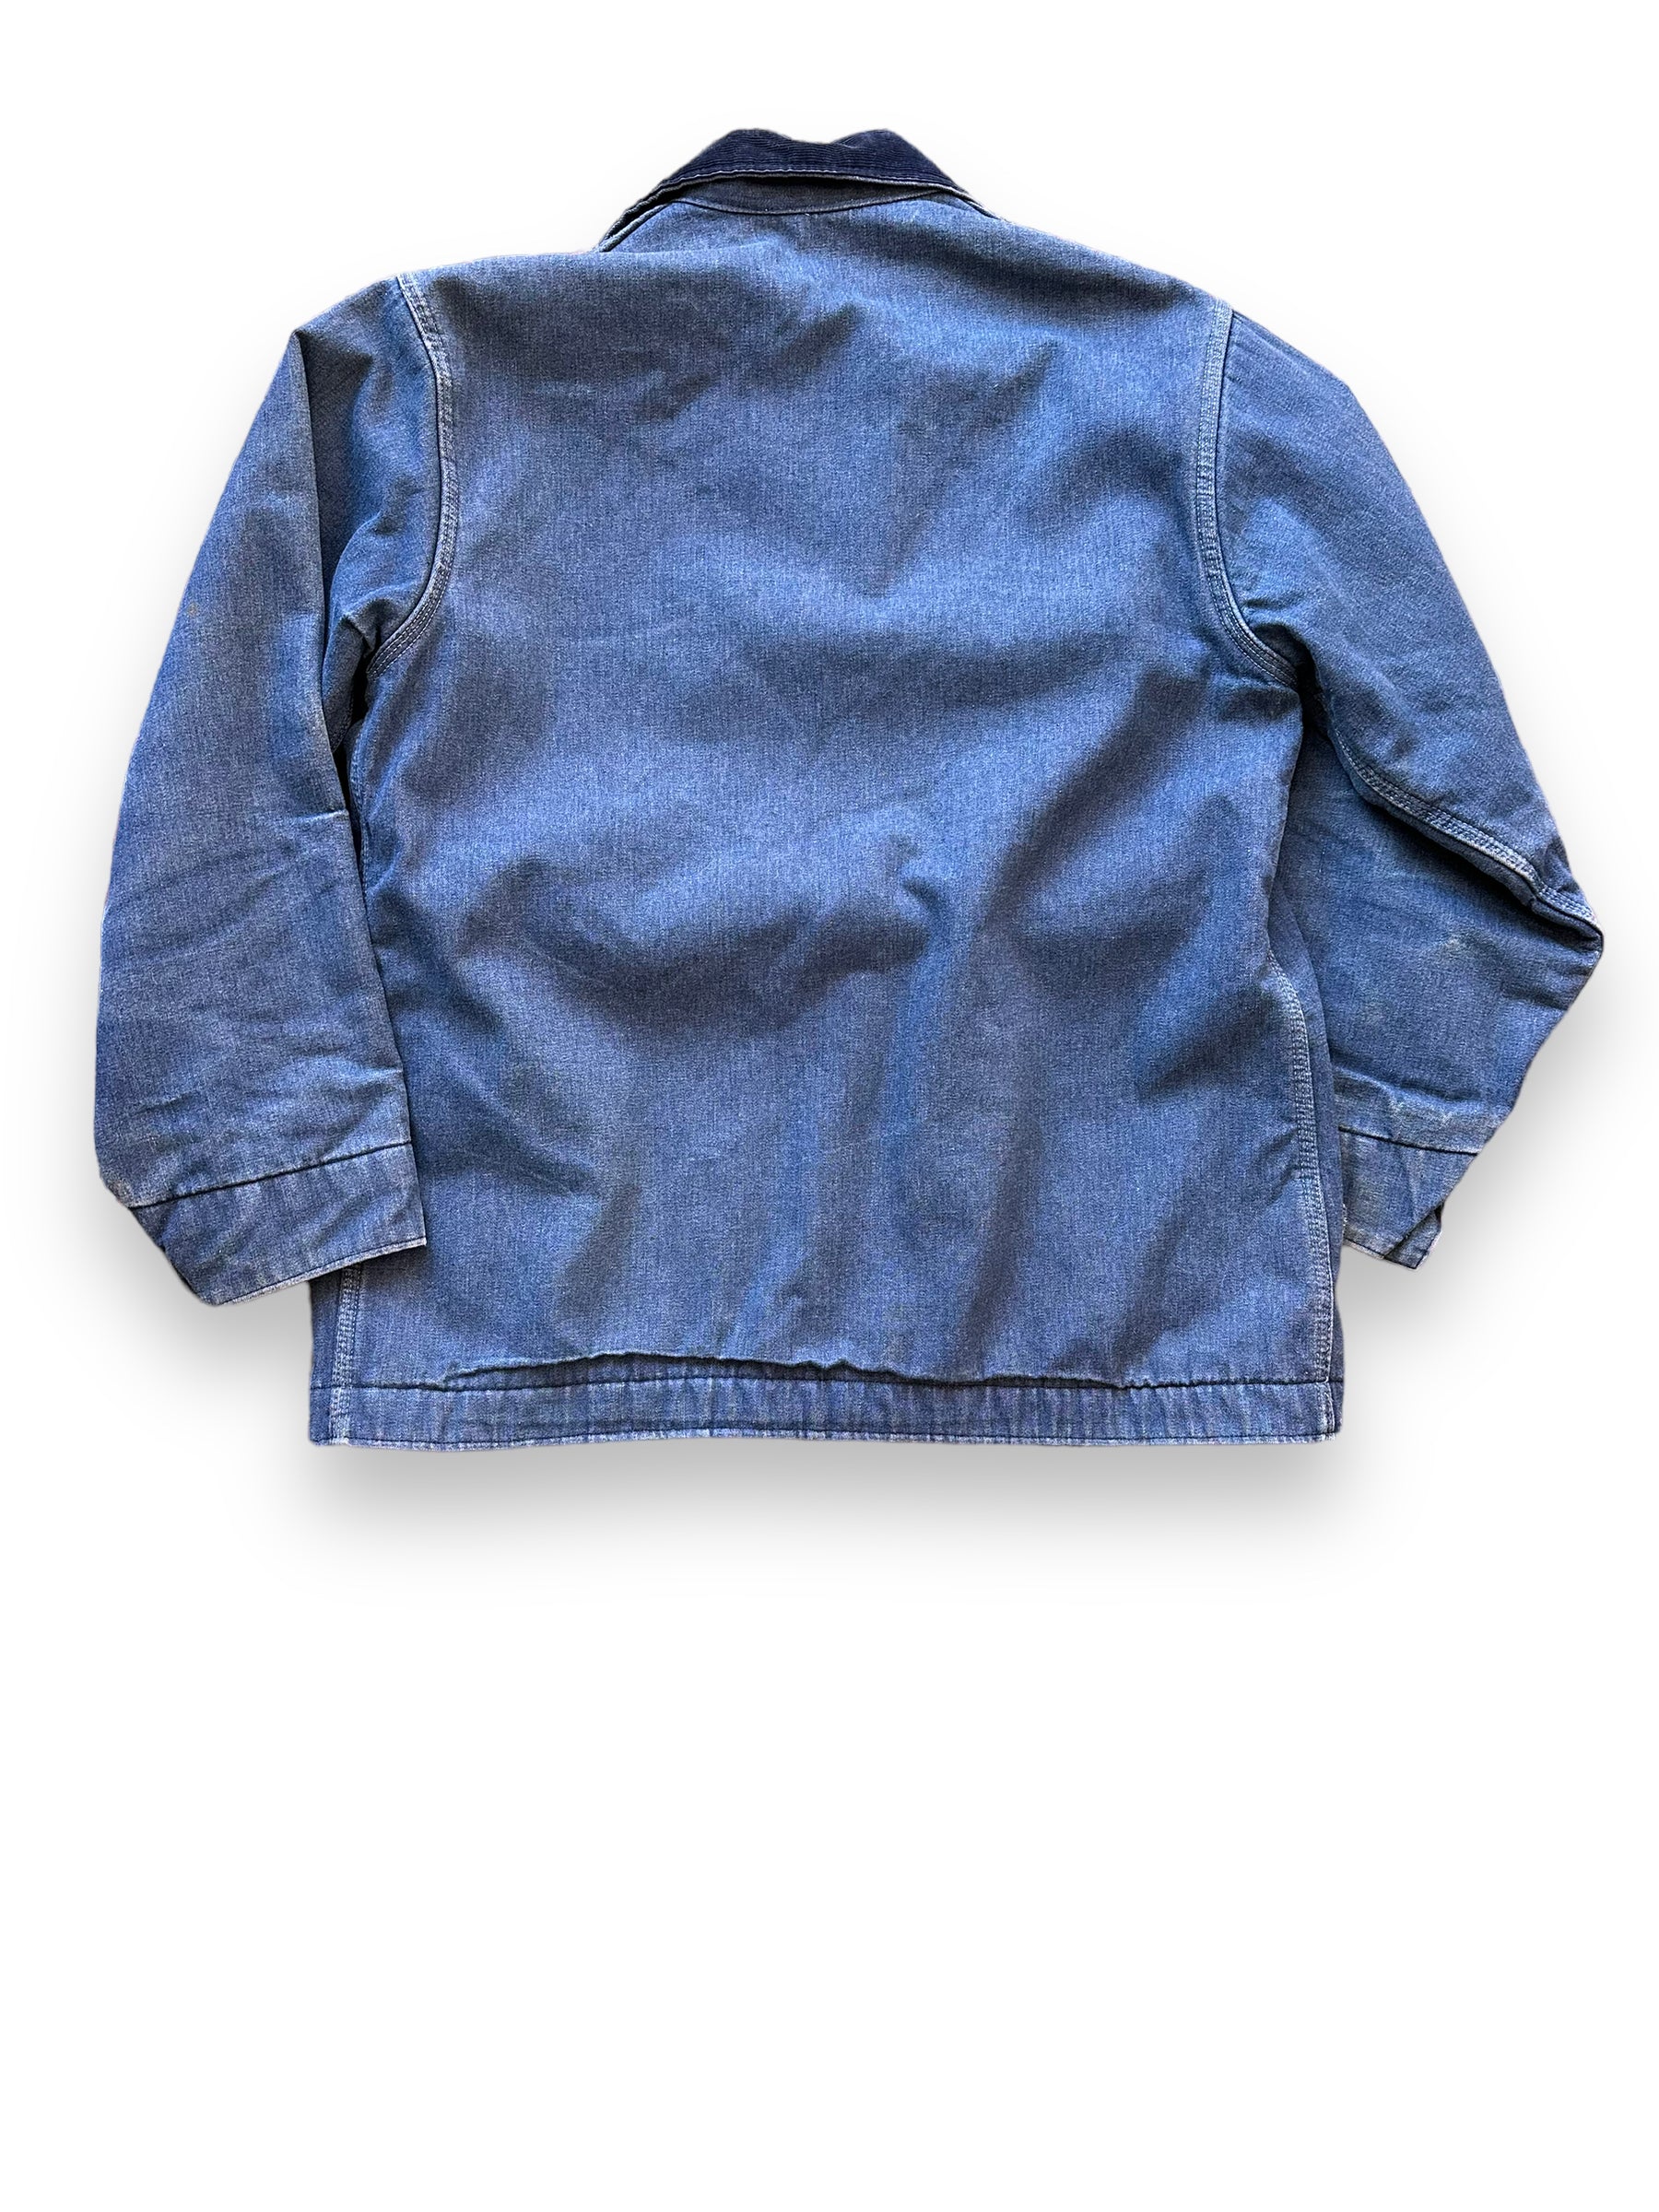 Rear View of Vintage Big Mac Blanket Lined Denim Chore Coat SZ XL | Vintage Denim Chore Coat | Barn Owl Vintage Seattle